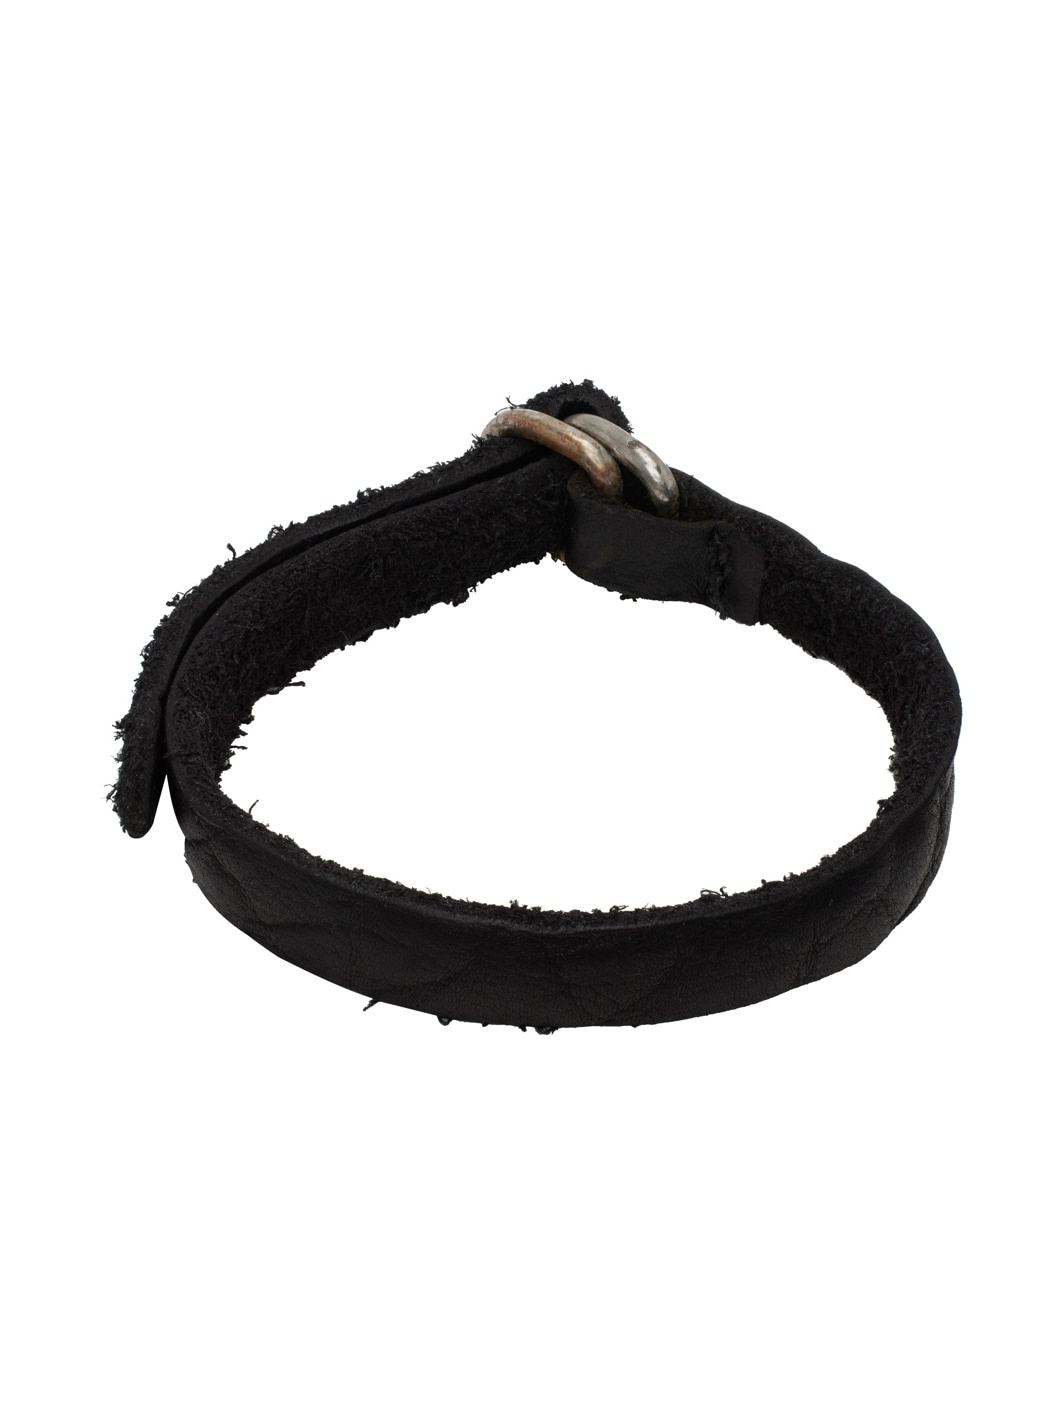 Black Bison Leather Bracelet - 2